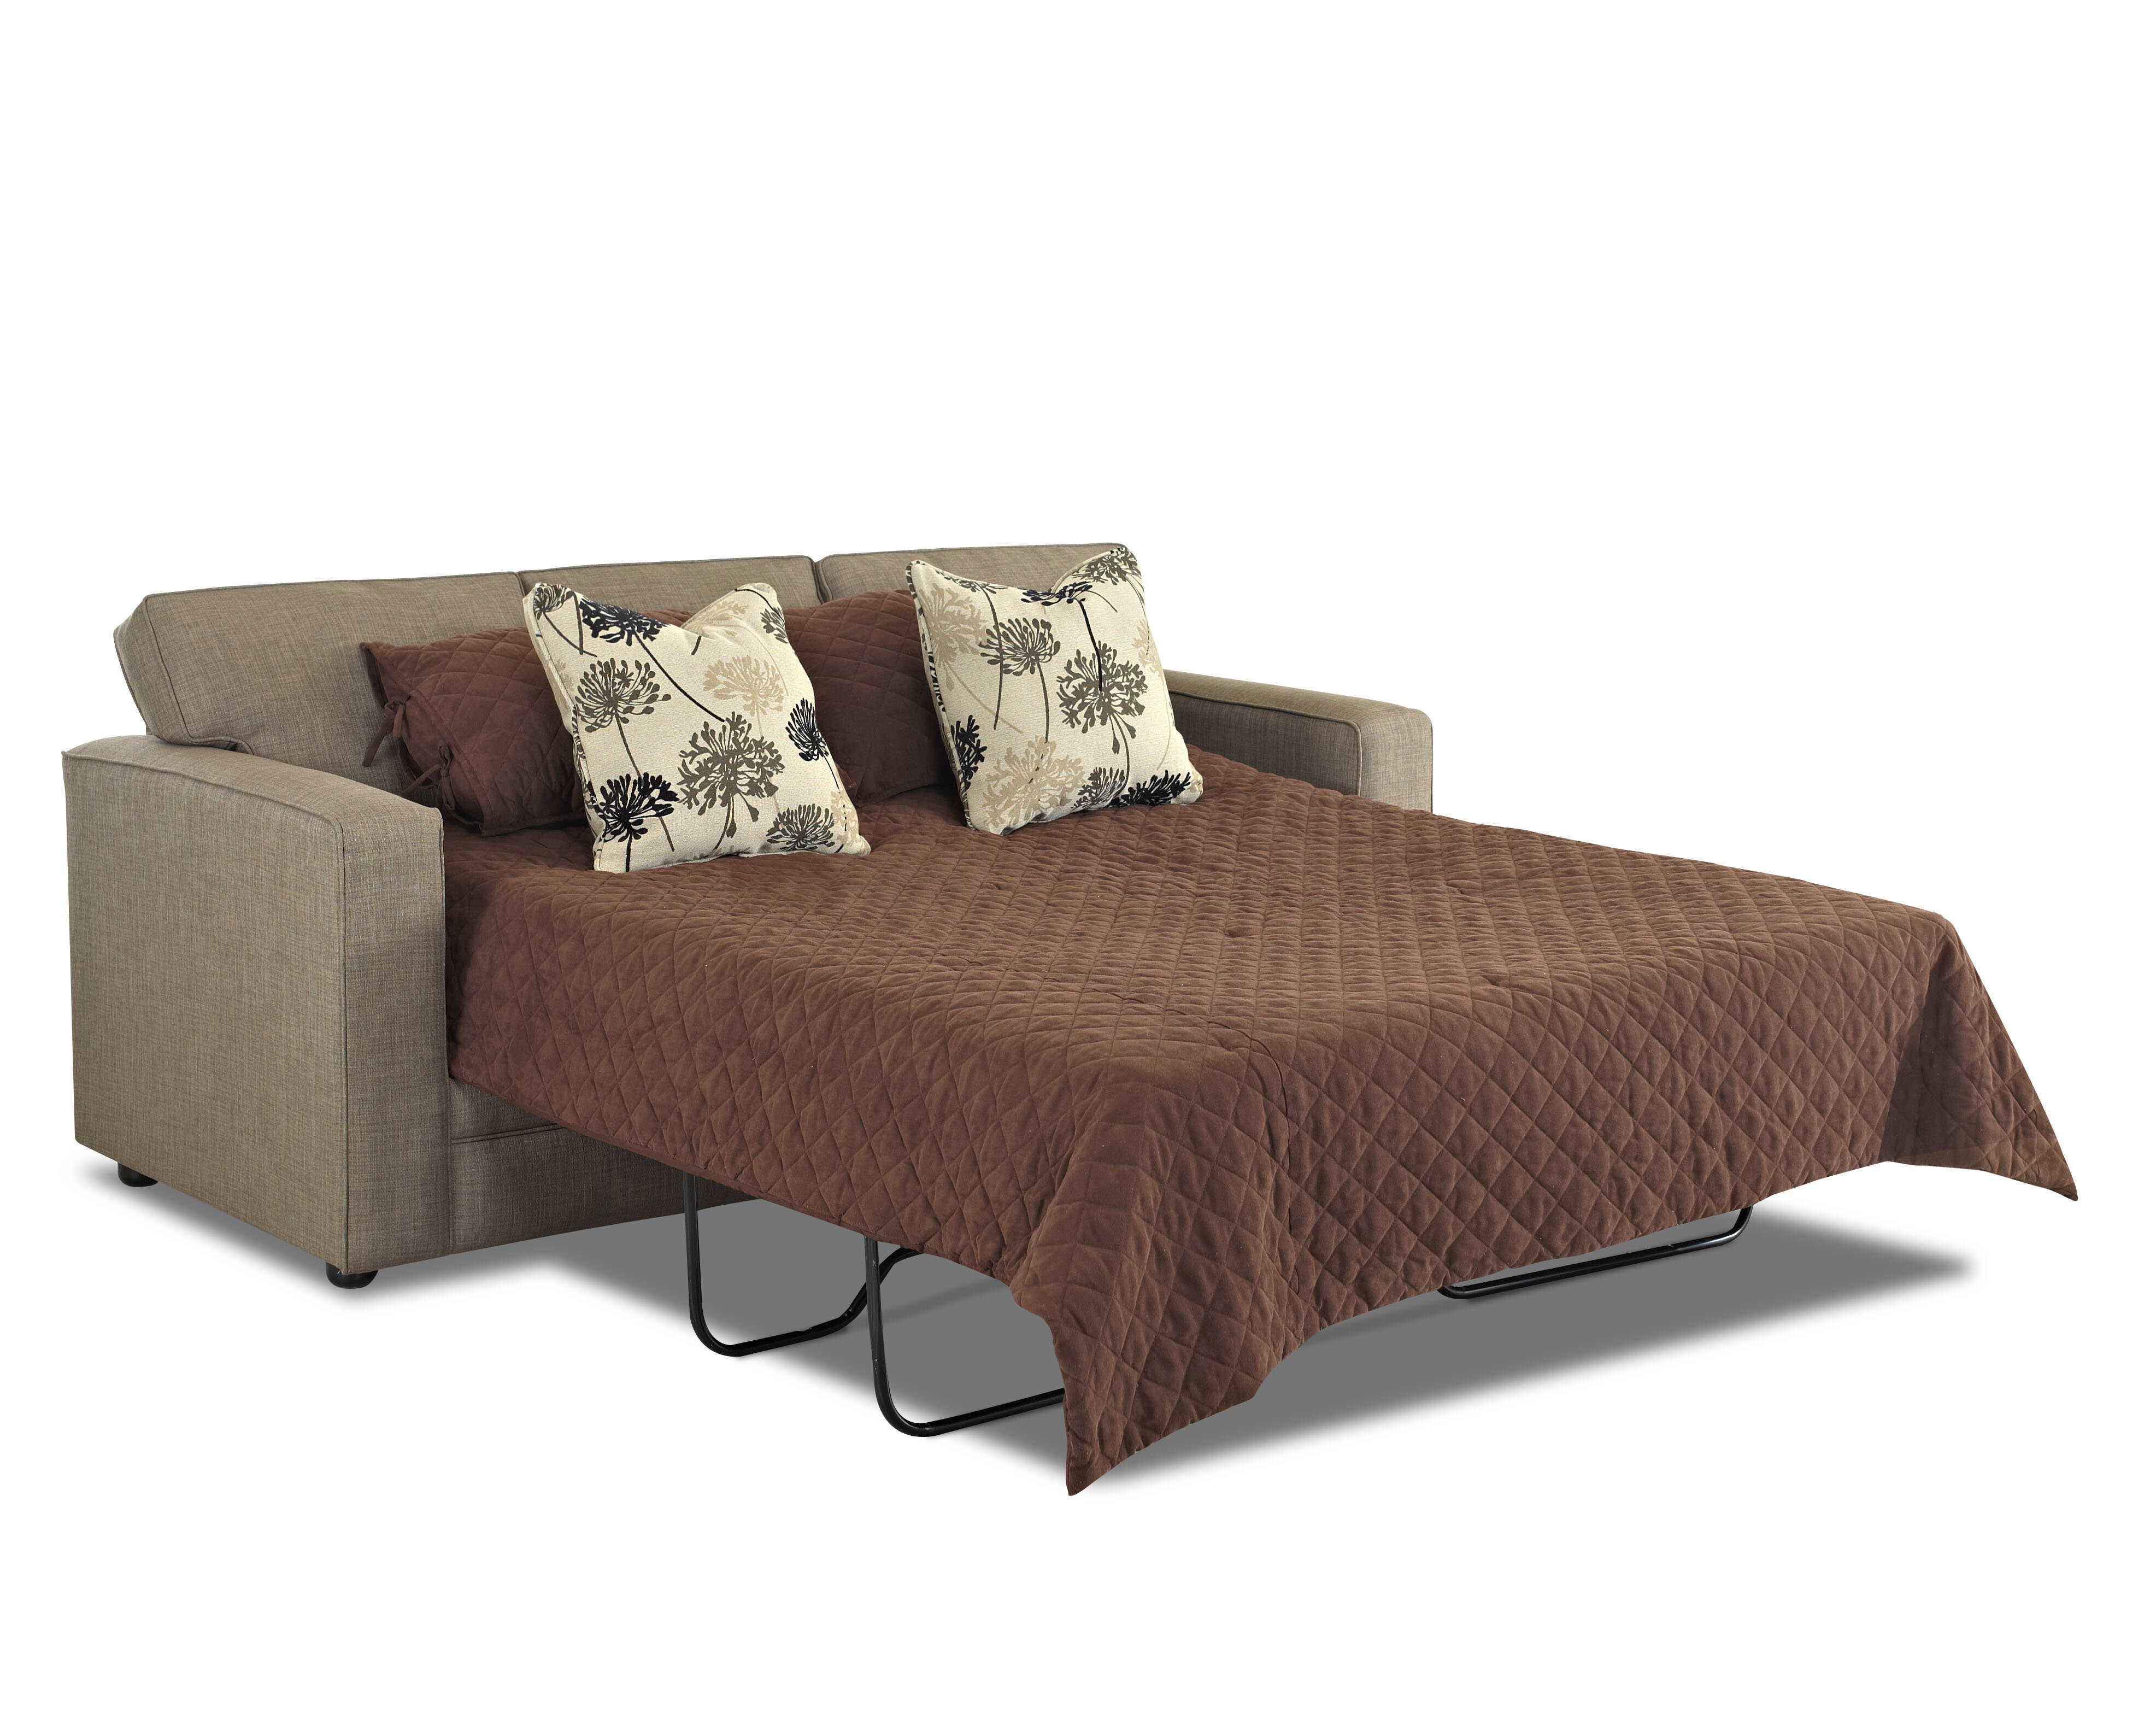 dreamquest sleeper sofa mattress reviews